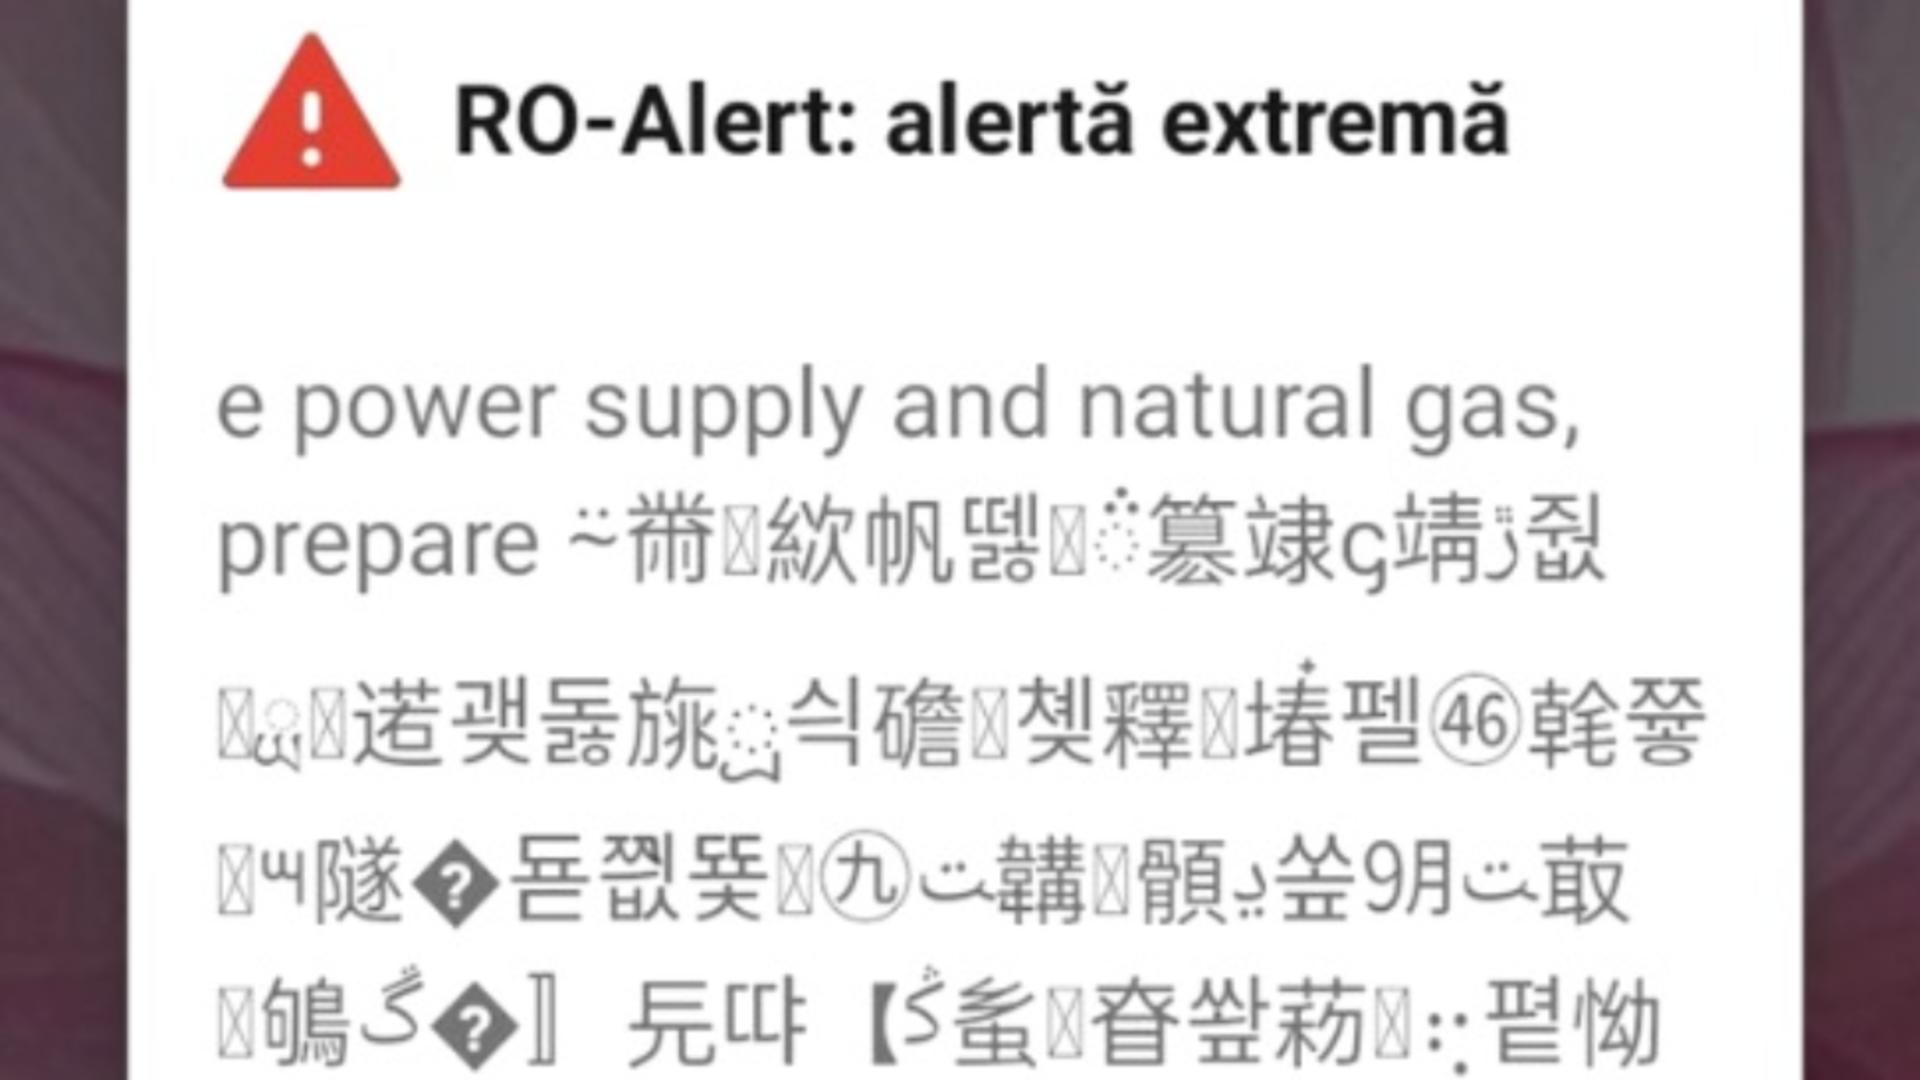 Ro-Alert de furtună în limba chineză